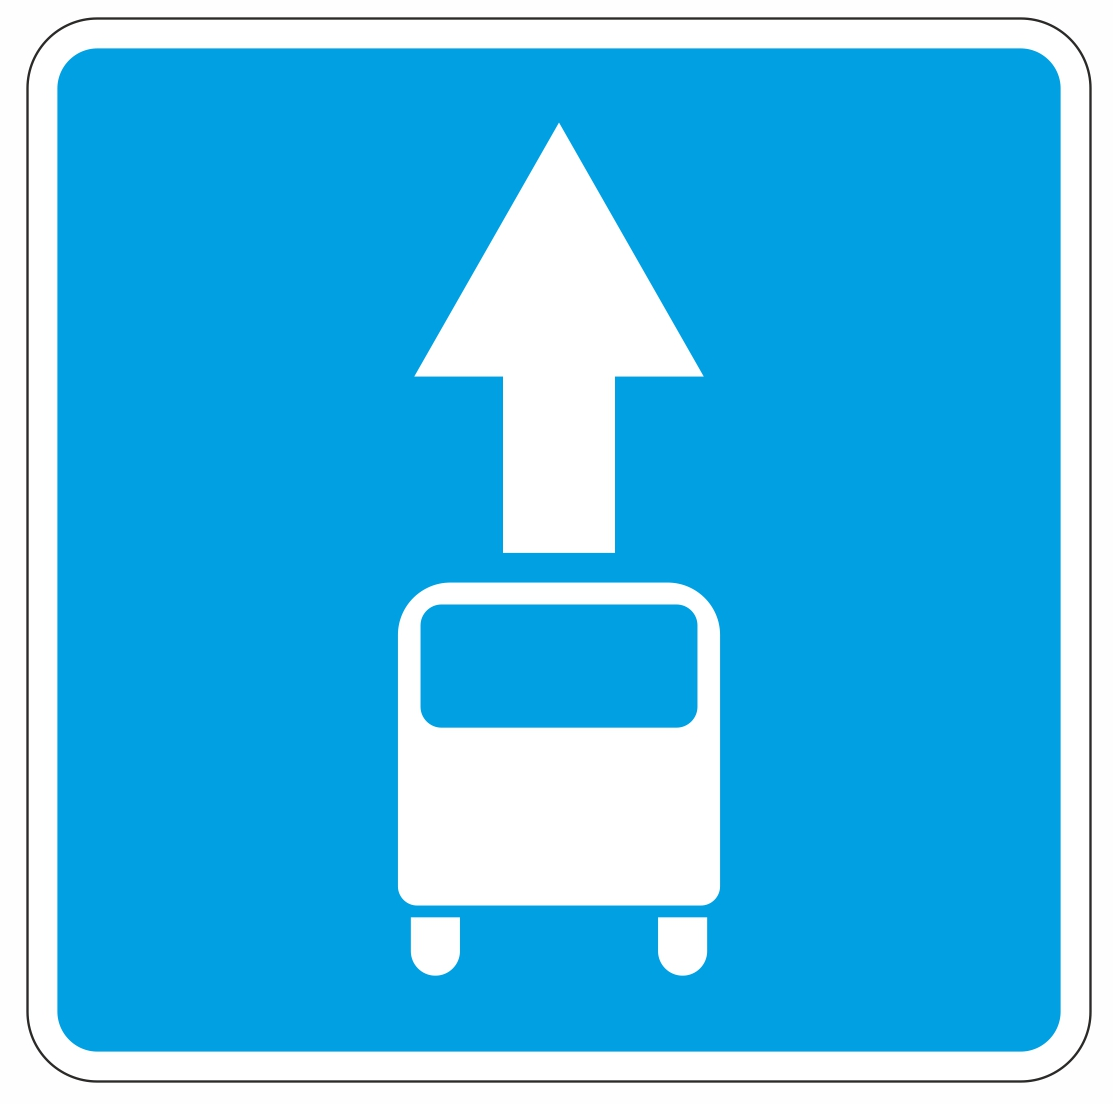 Знак 5.14 "Полоса для маршрутных транспортных средств", картинка из свободных источников. Сервис Яндекс-Картинки.